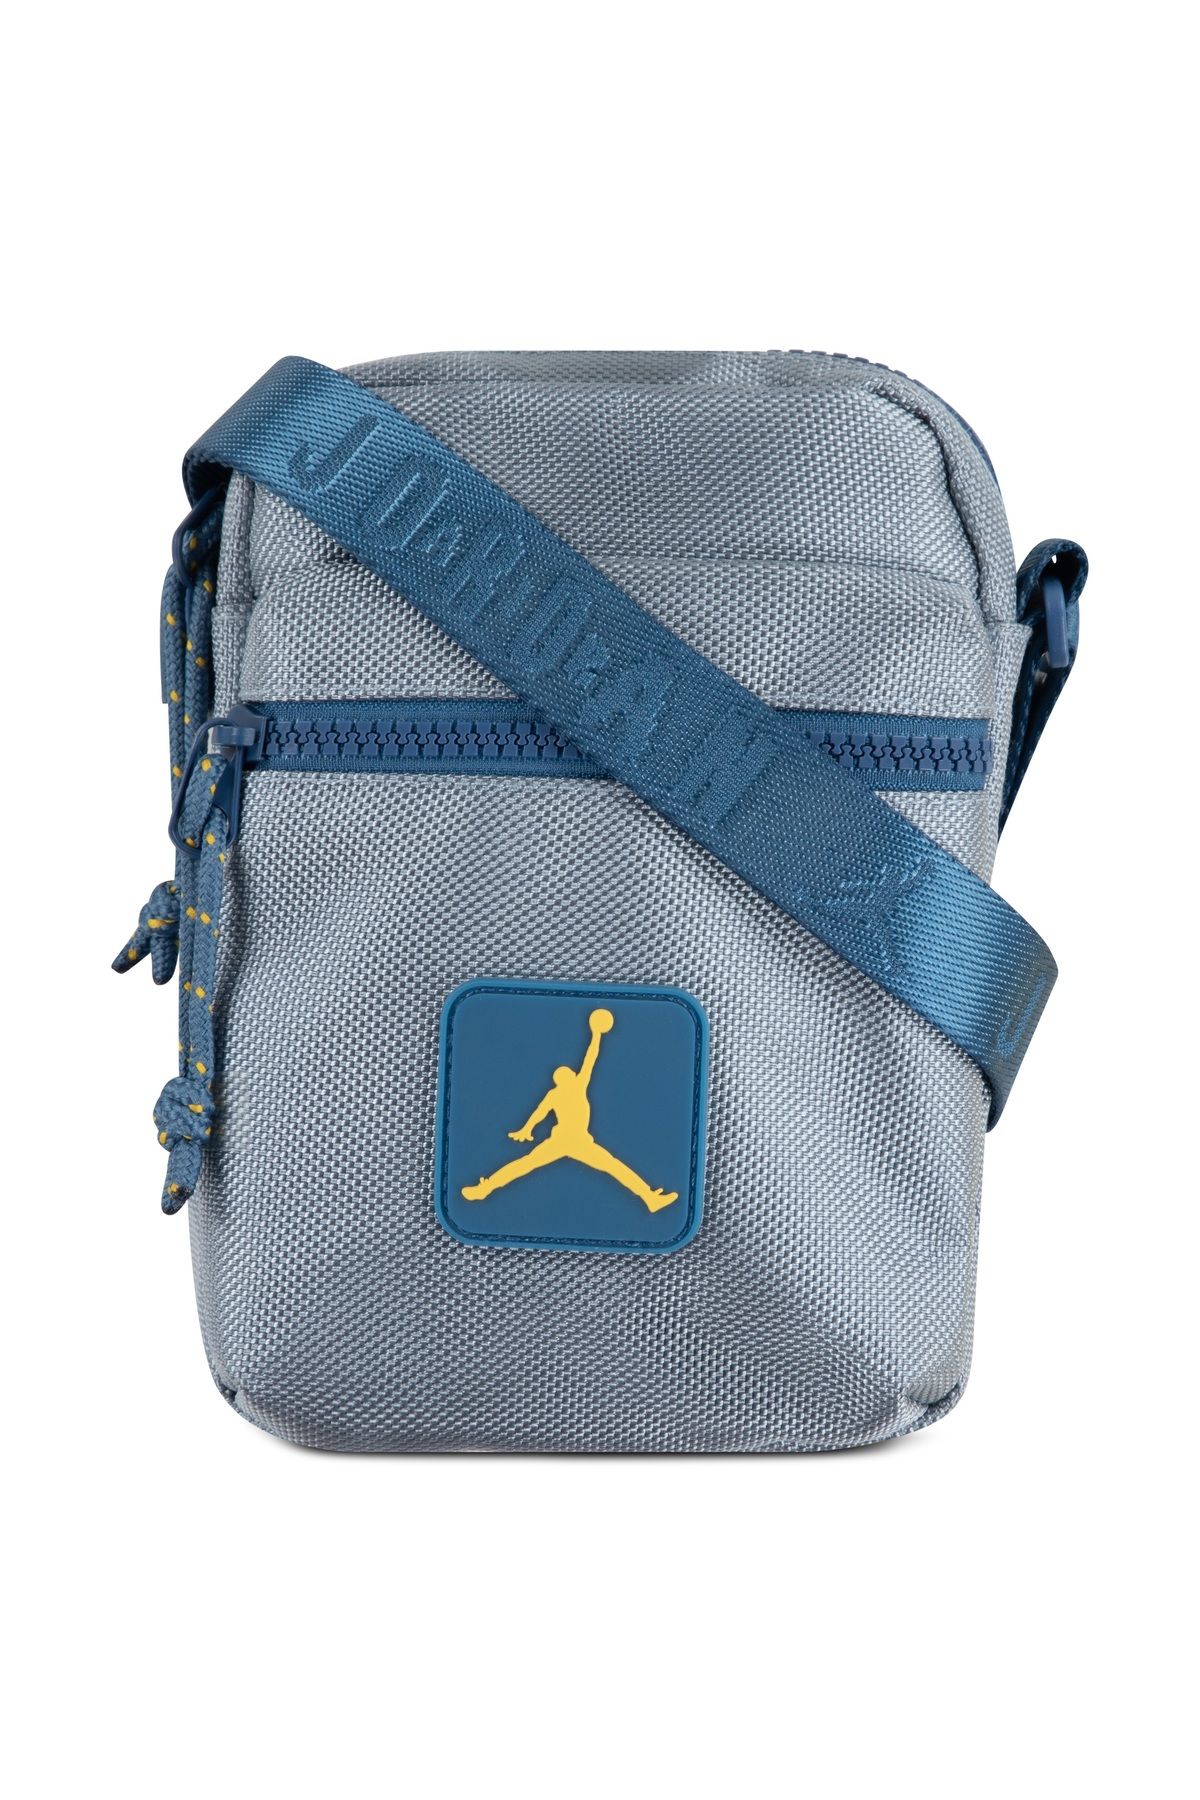 Nike Jordan Rıse Festıval Bag Kol Çanta